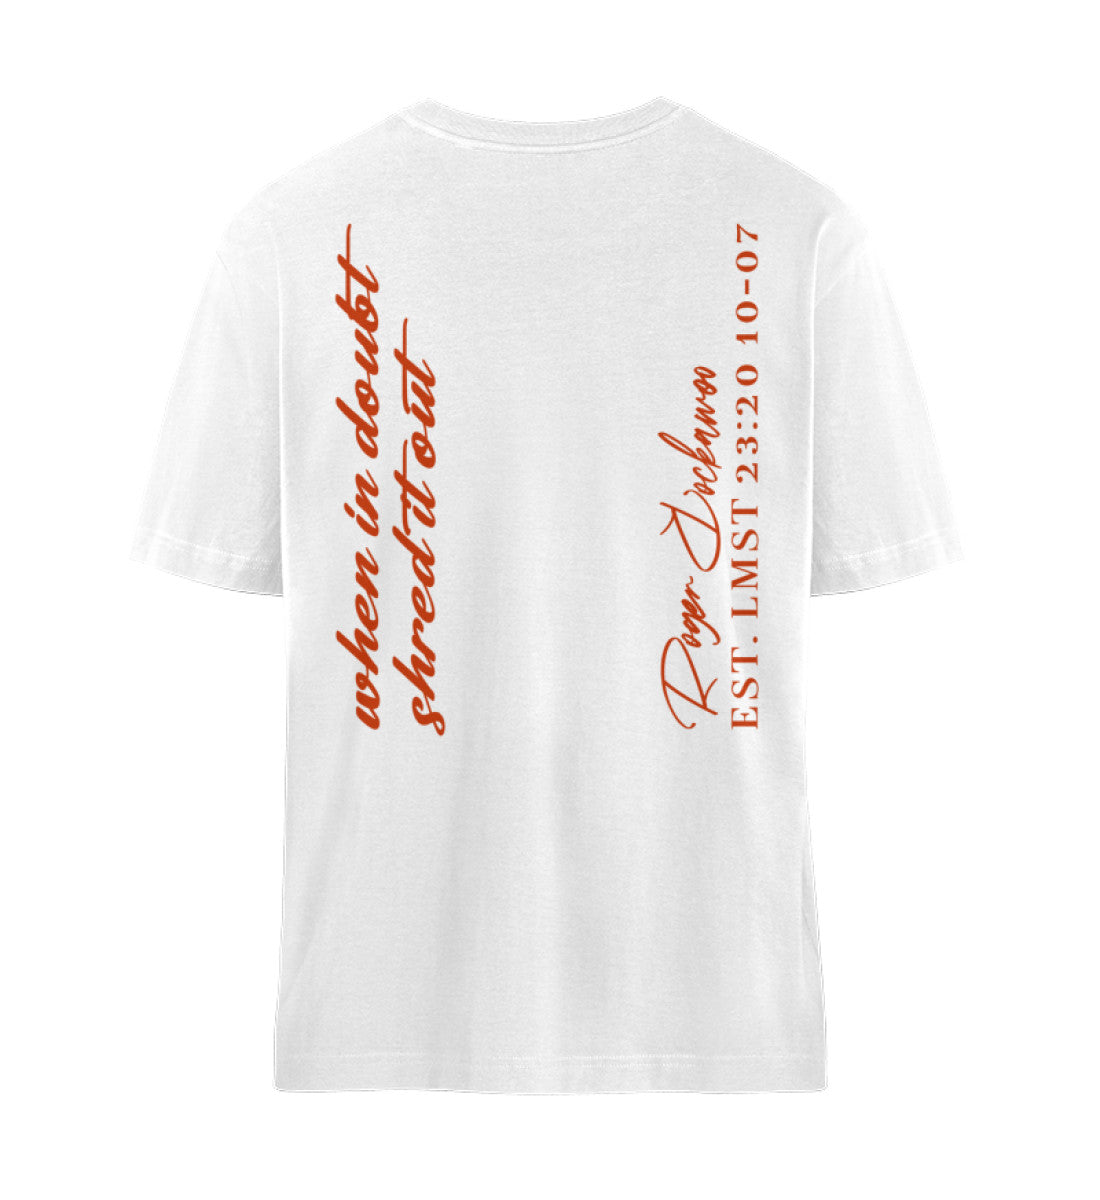 Weißes T-Shirt Unisex Relaxed Fit für Frauen und Männer bedruckt mit dem Design der Roger Rockawoo Kollektion Guitar Shred it out